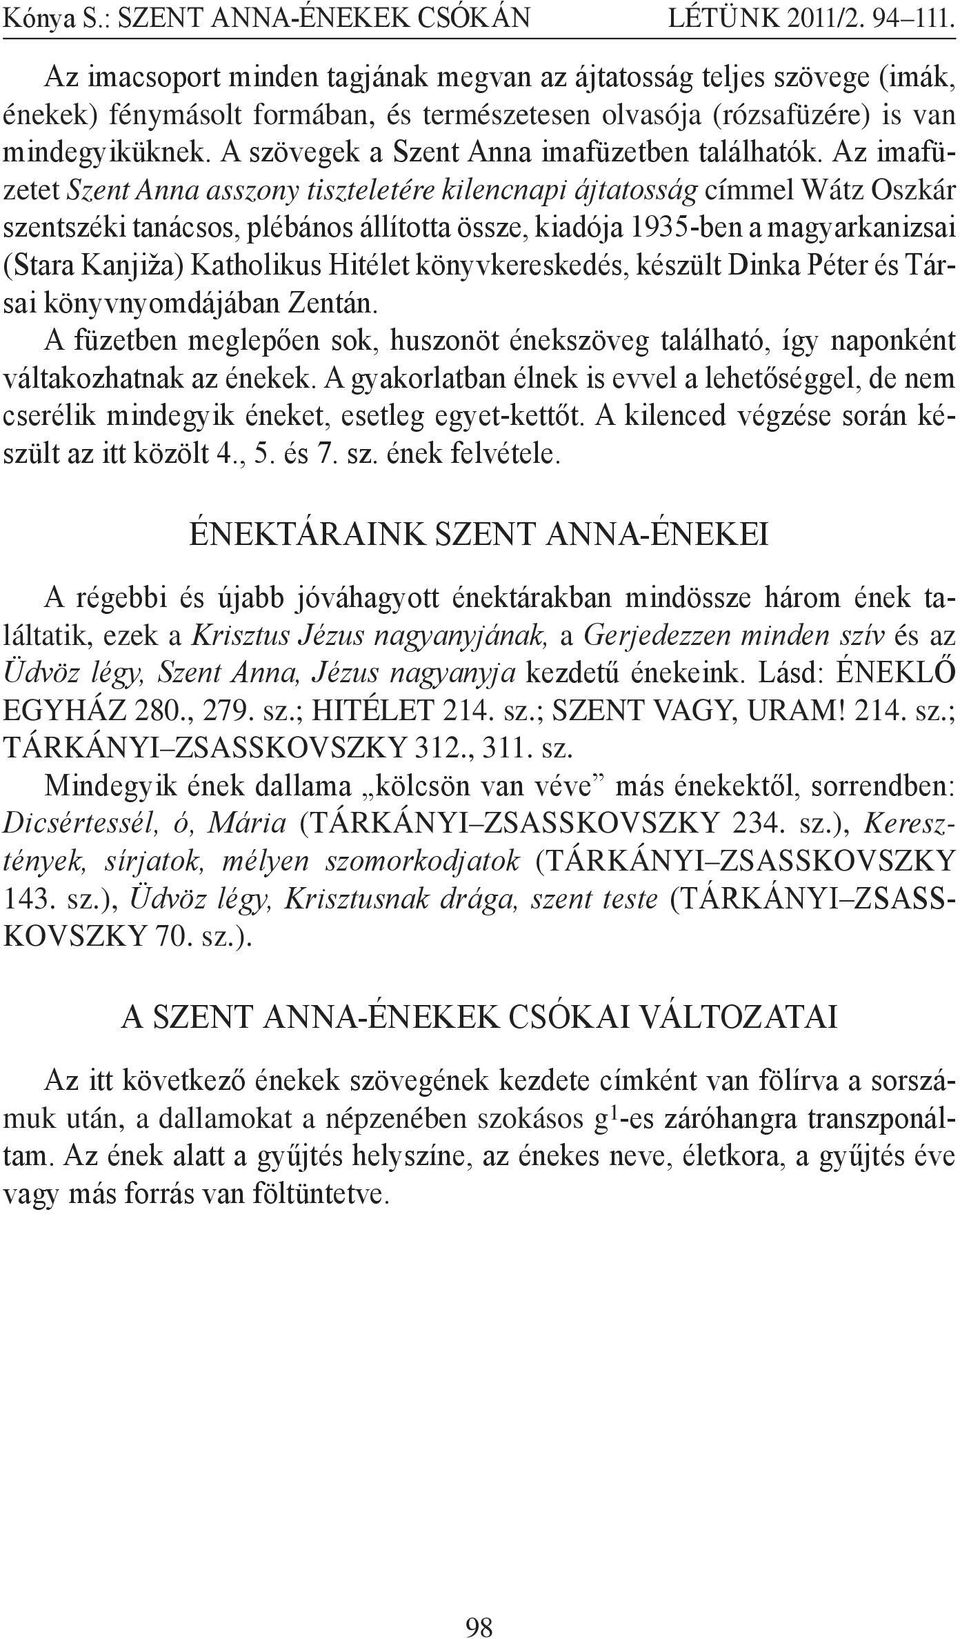 Az imafüzetet Szent Anna asszony tiszteletére kilencnapi ájtatosság címmel Wátz Oszkár szentszéki tanácsos, plébános állította össze, kiadója 1935-ben a magyarkanizsai (Stara Kanjiža) Katholikus